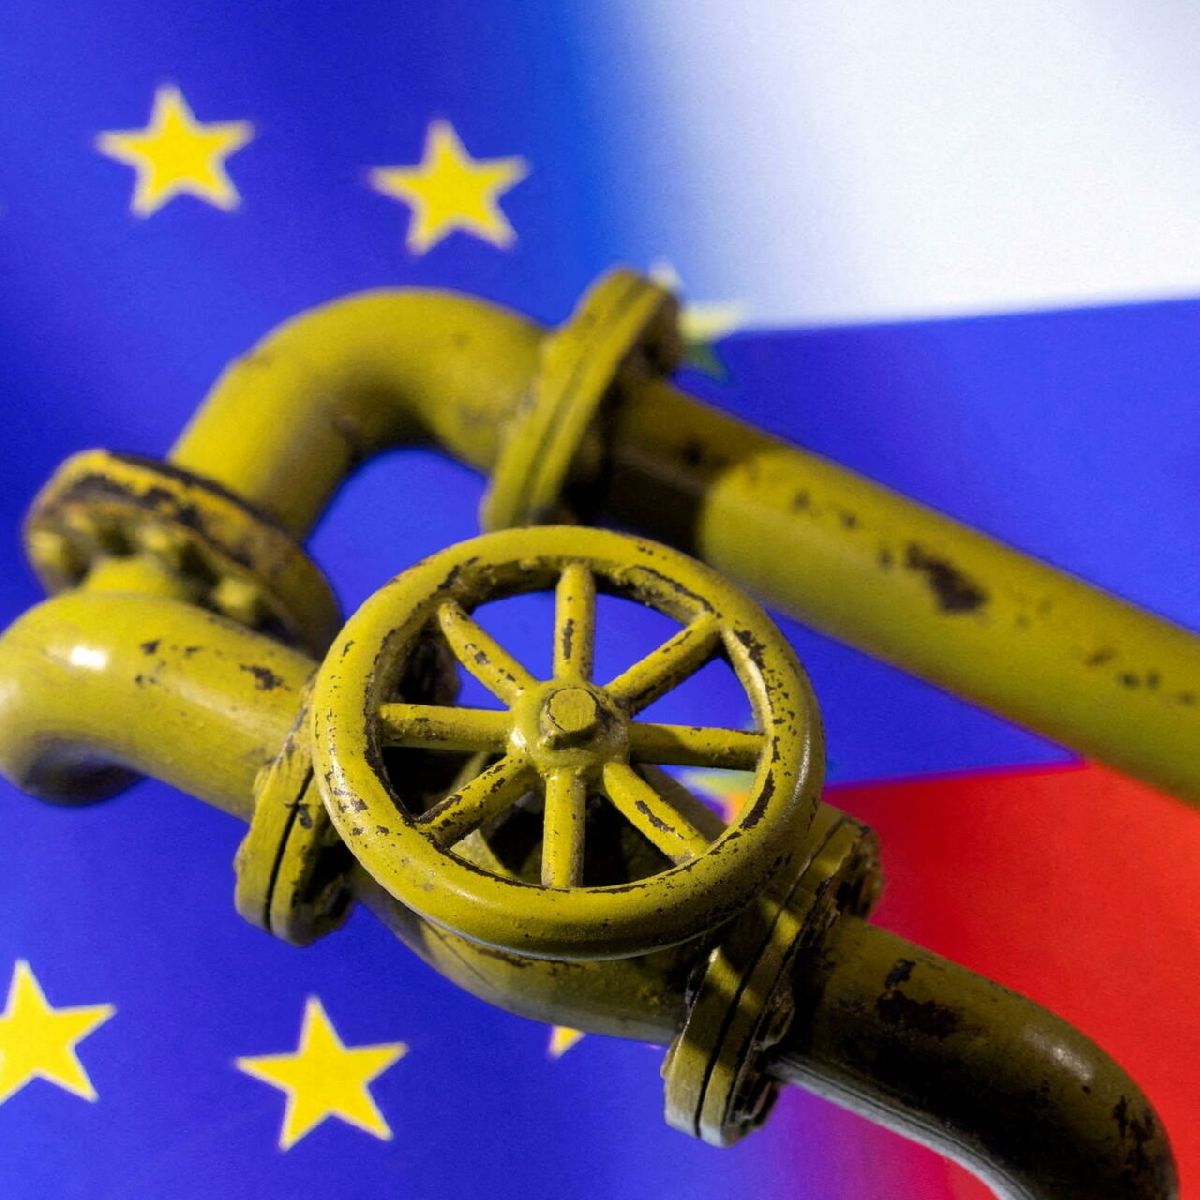 Los europeos serán los primeros en ‘sufrir’ el embargo petrolero, advierte Rusia